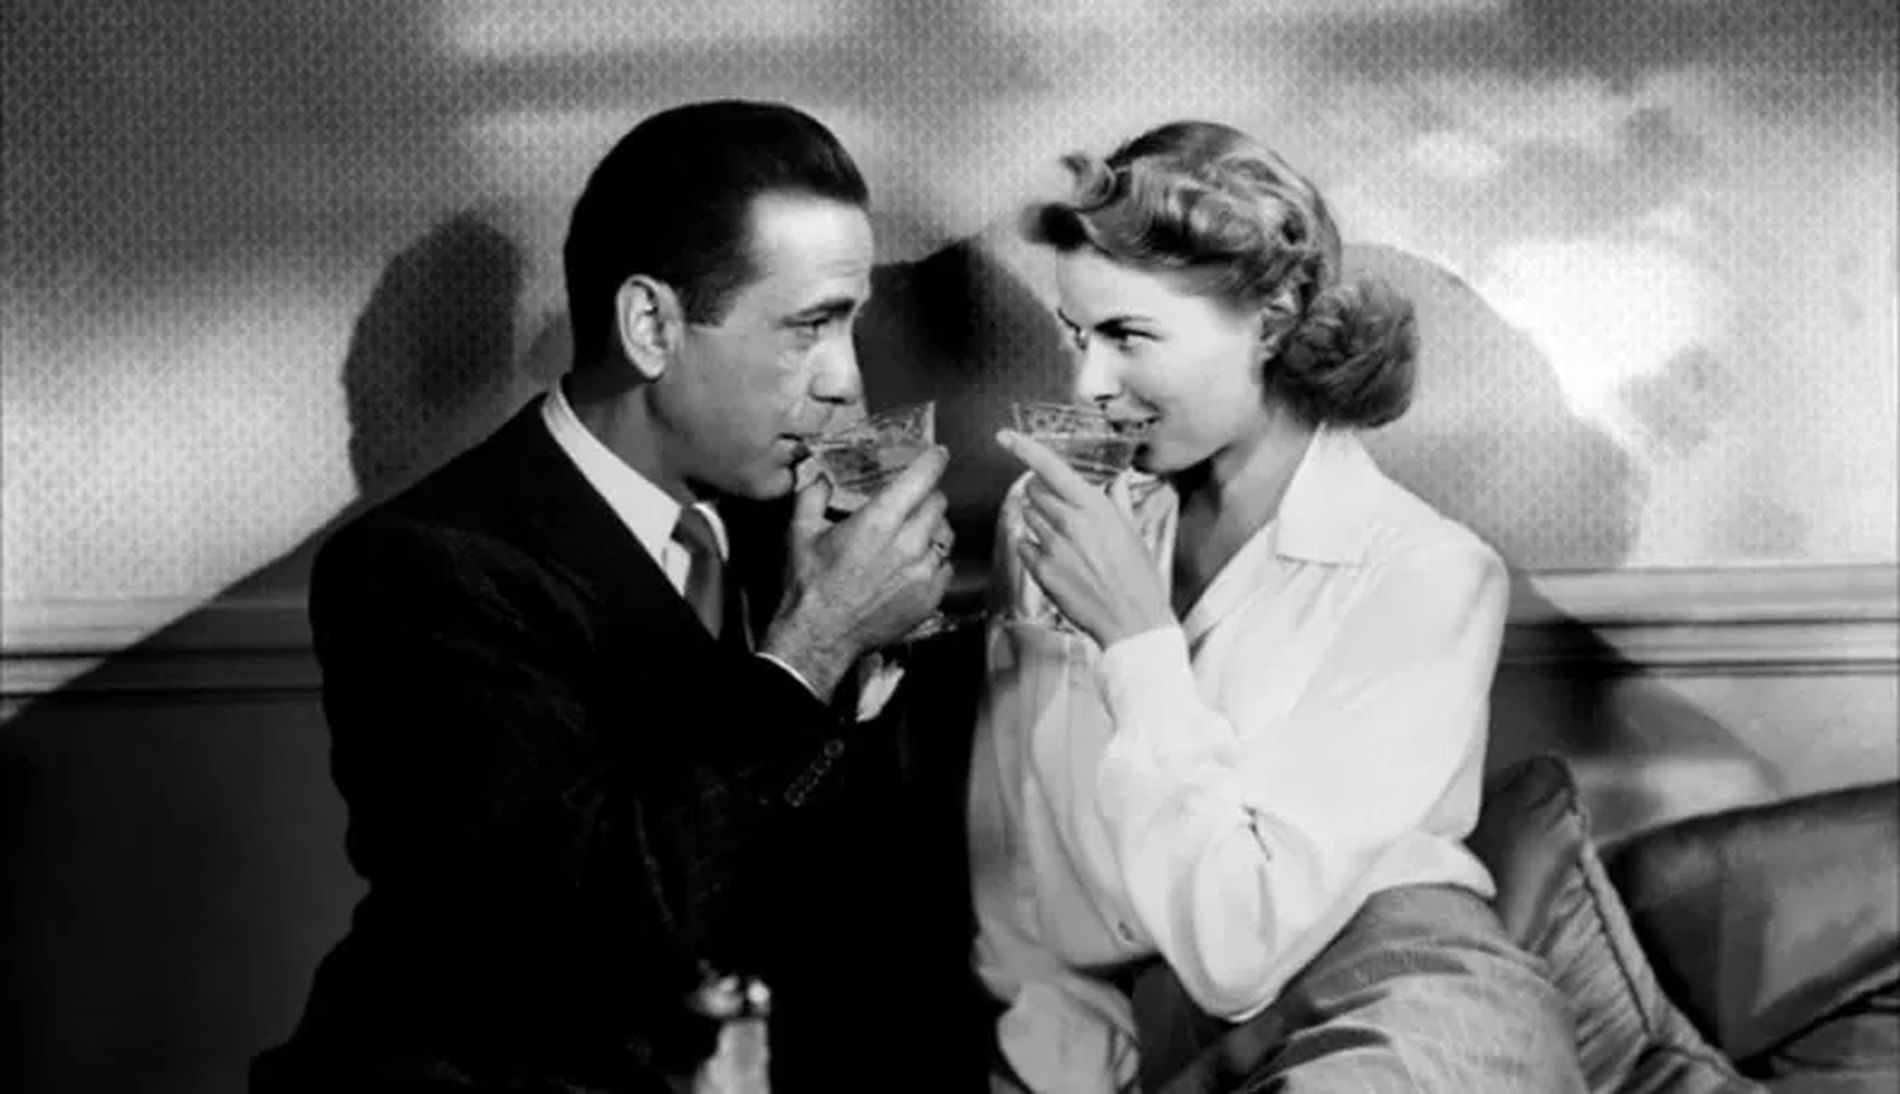 Valentine's Day Movies: "Casablanca" (1942)